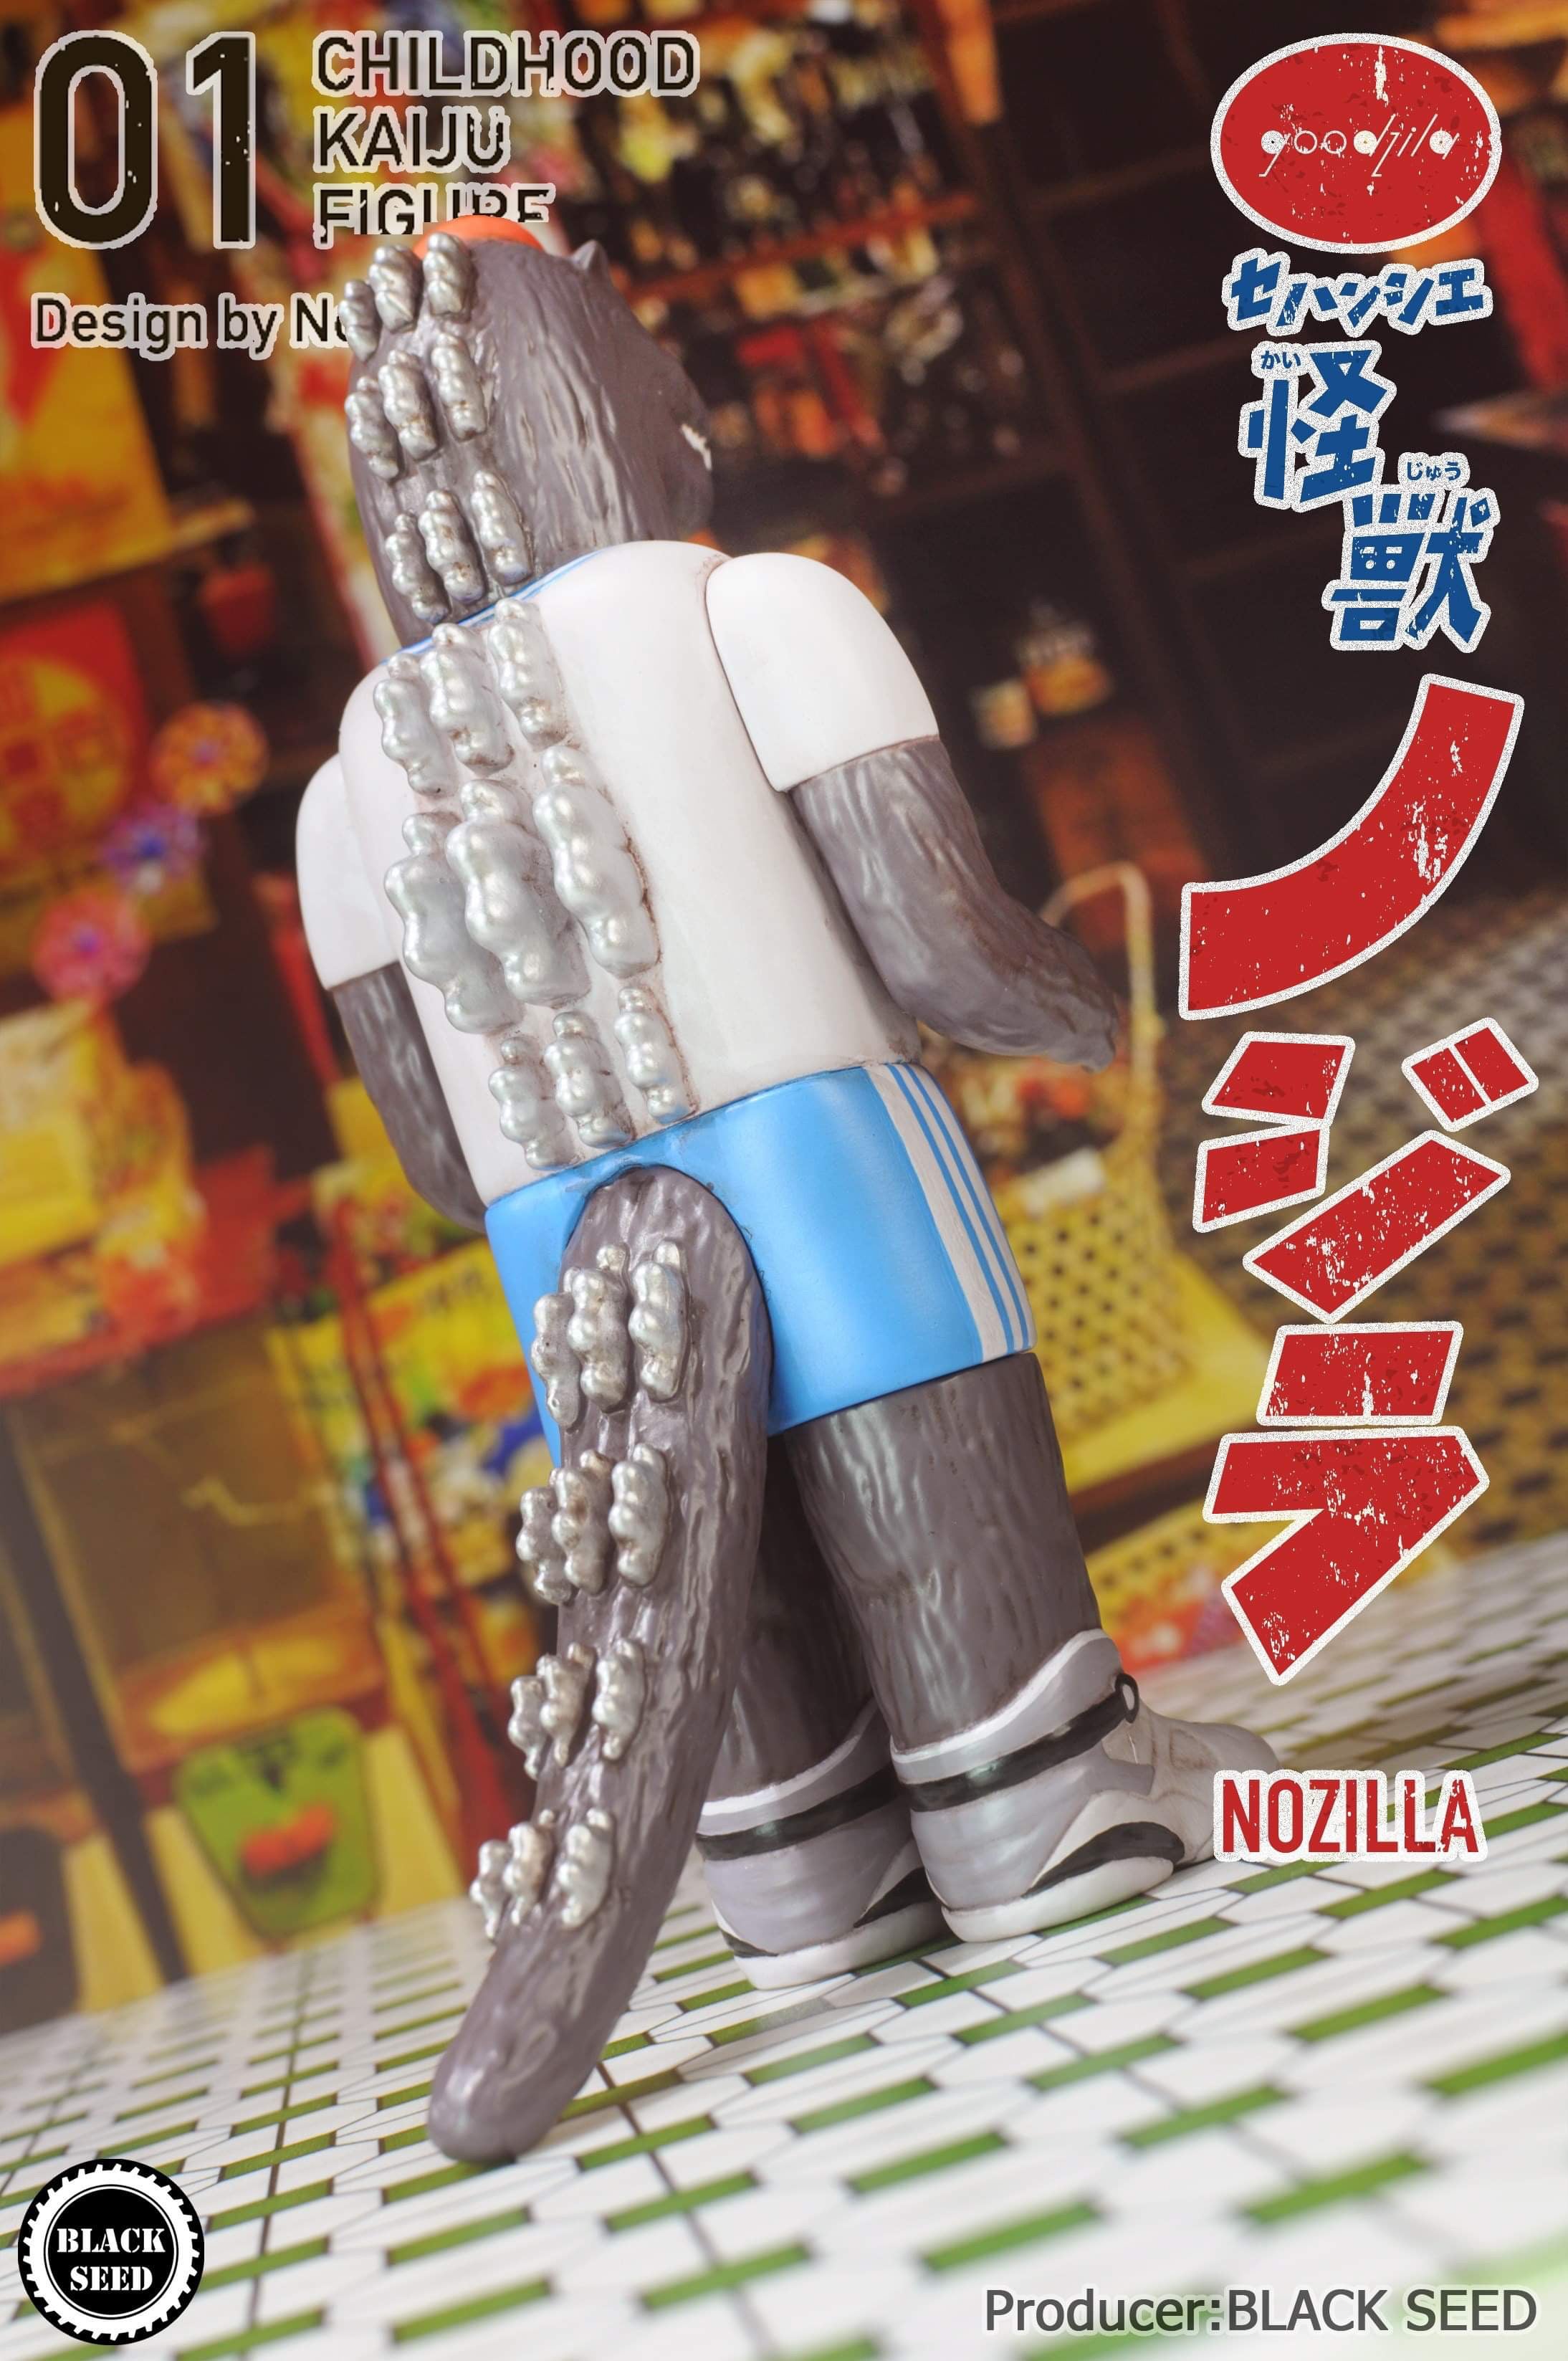 Nozilla by Noger Chen Nog Toy